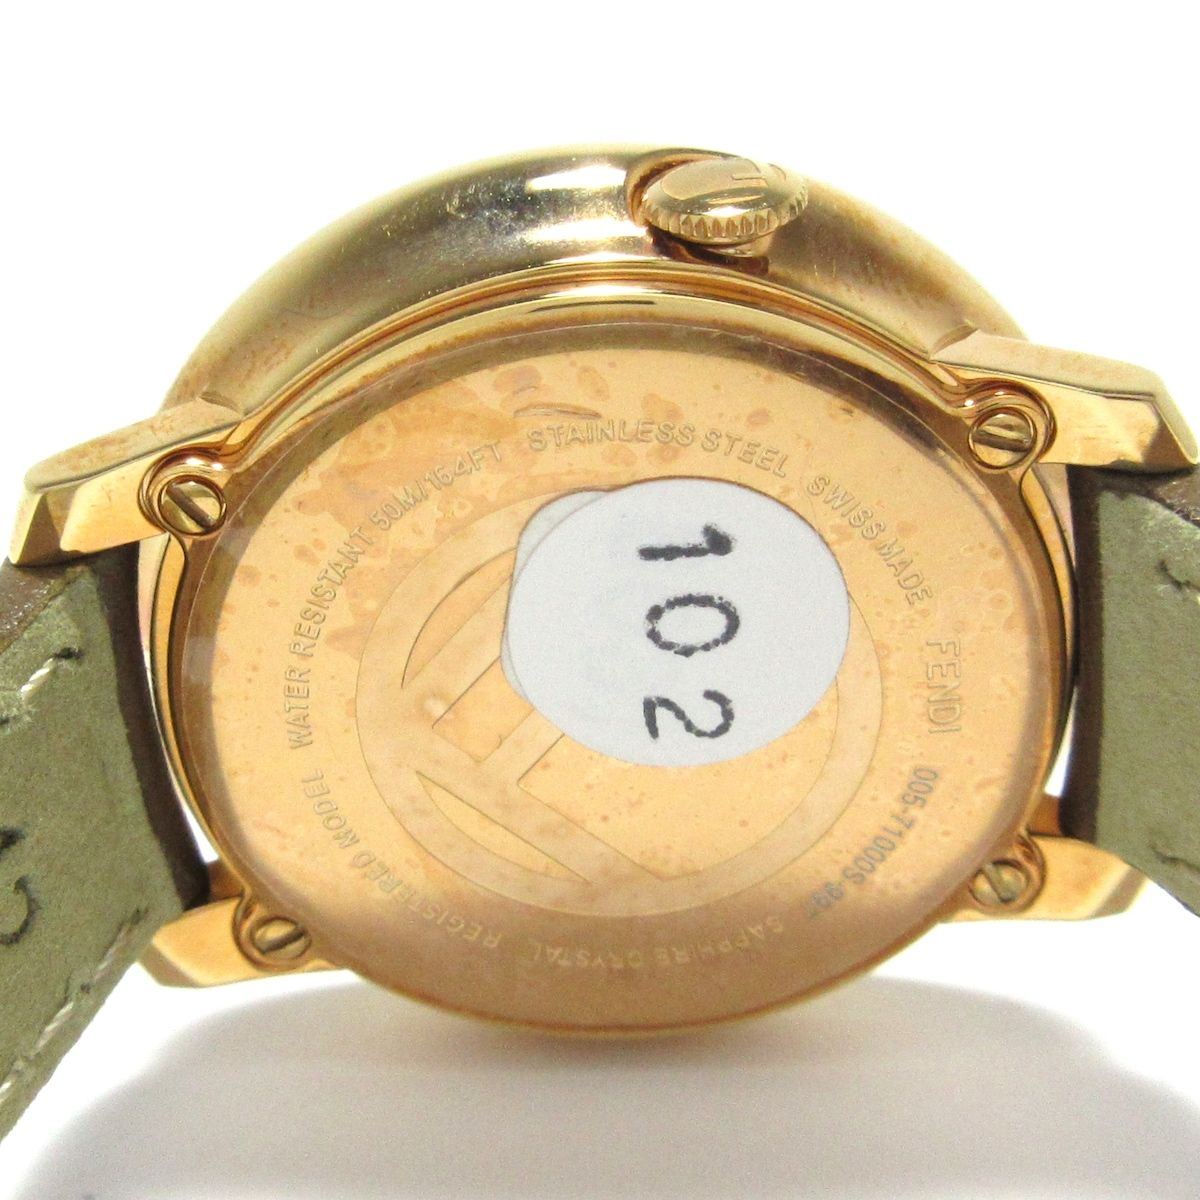 FENDI(フェンディ) 腕時計 710000S レディース 革ベルト 白 - メルカリ